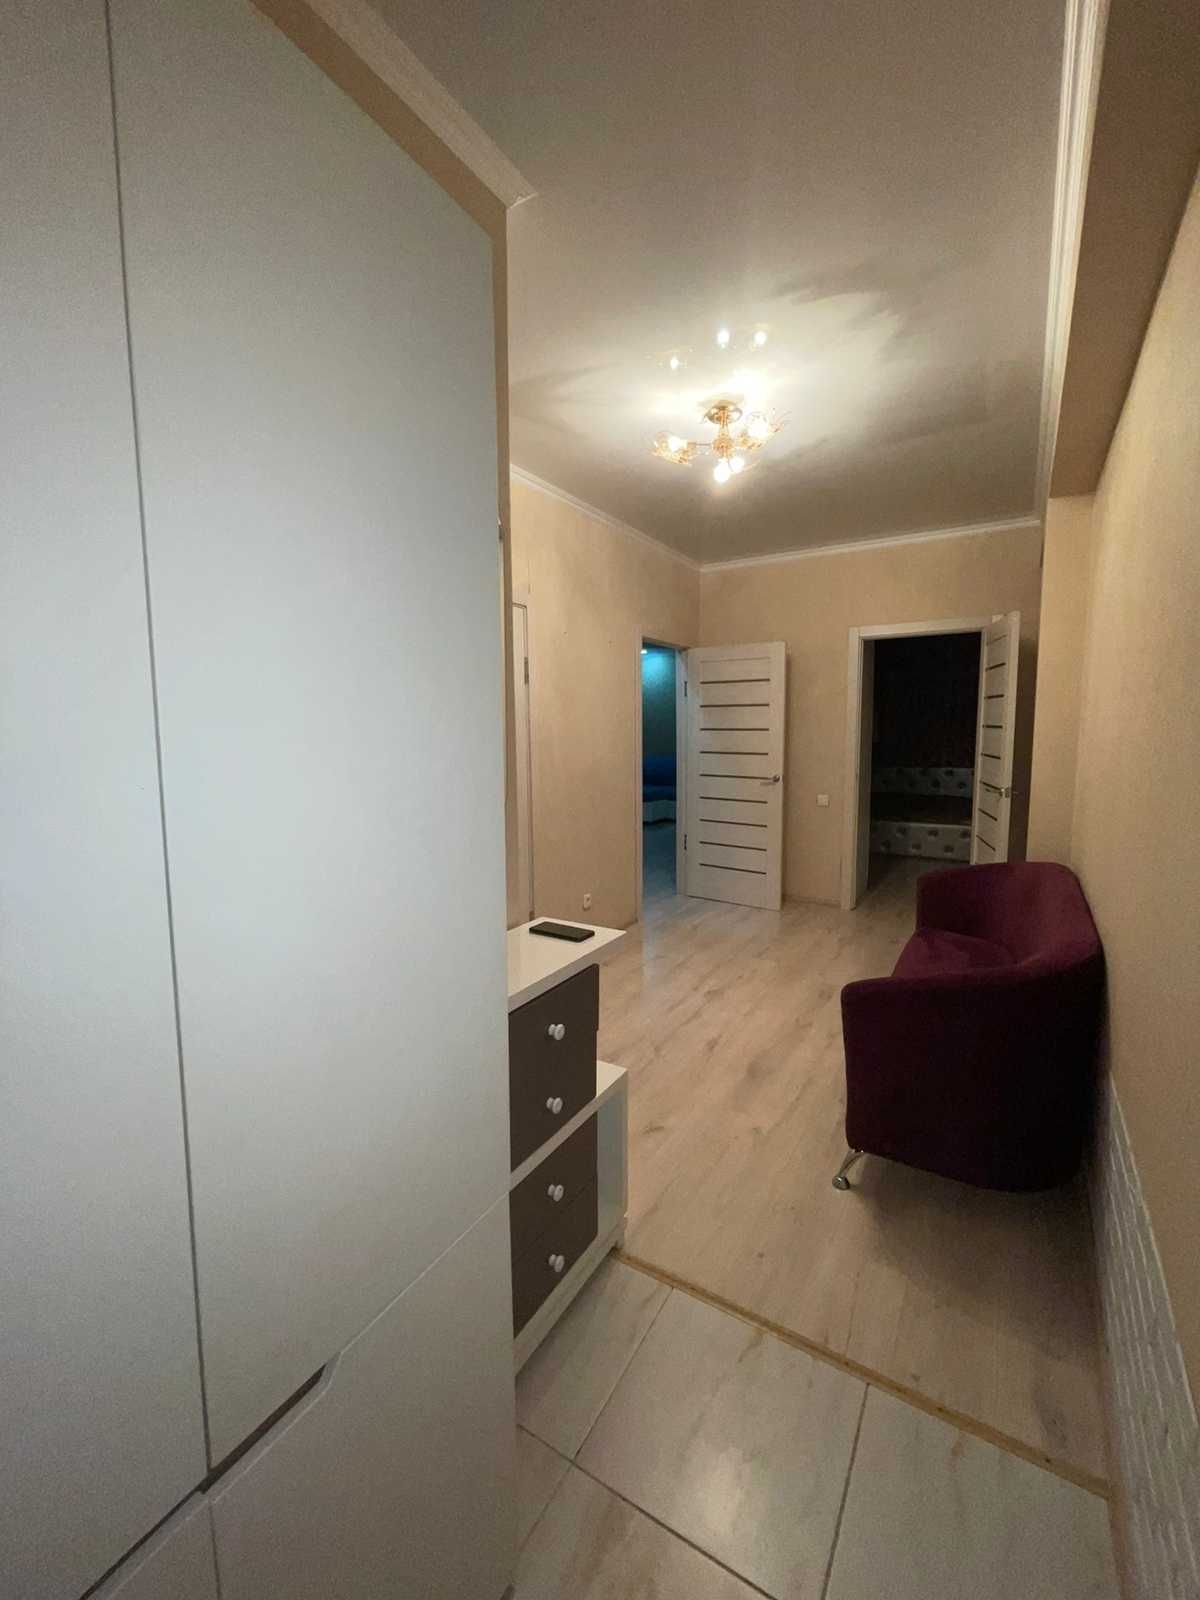 Продается отличная 2 комнатная квартира в районе Садовой в новом доме